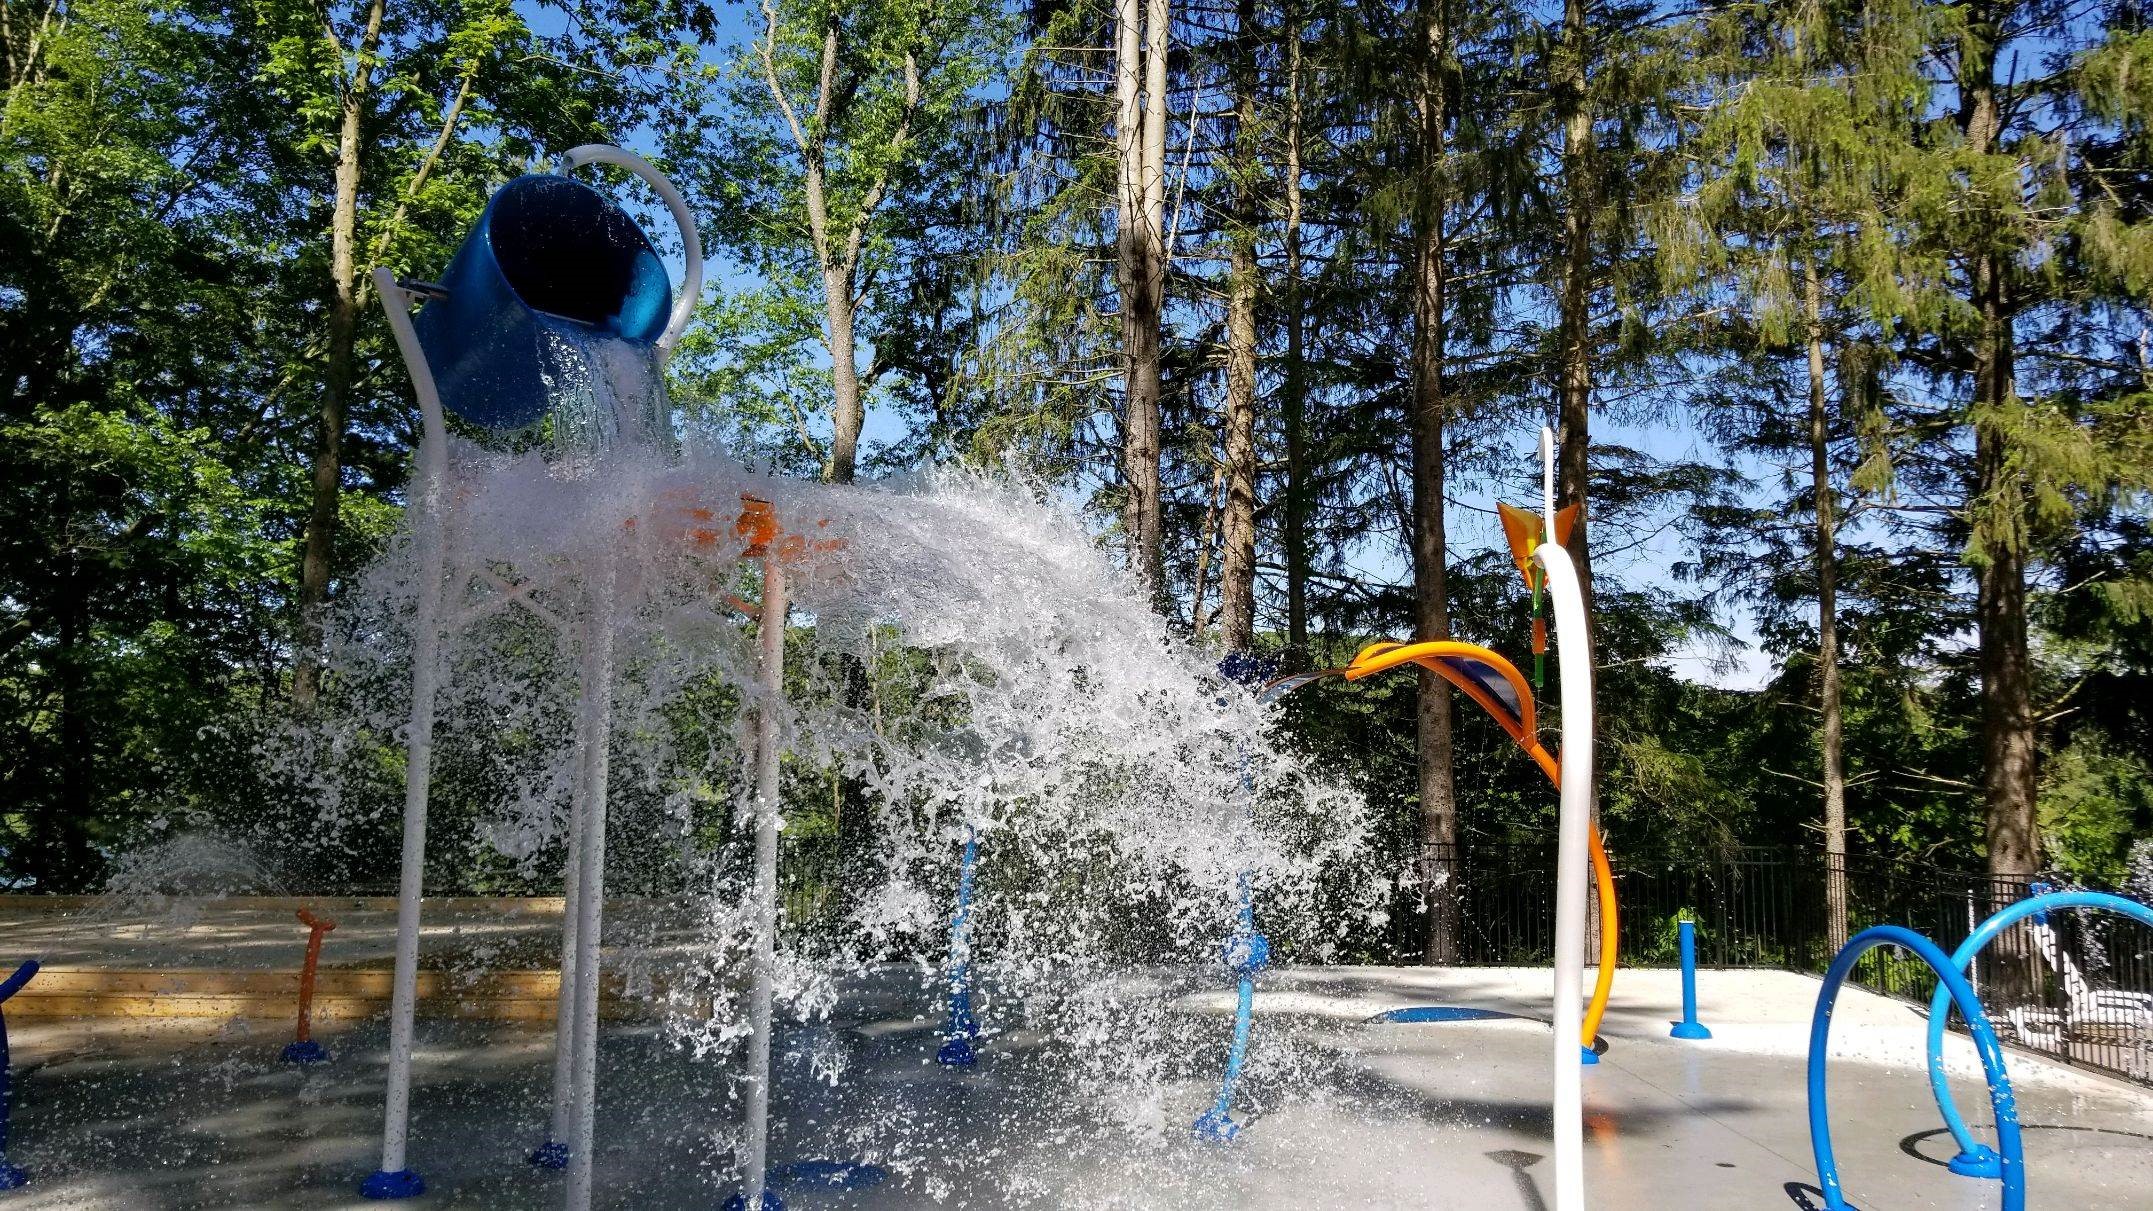 Vortex Splashpad Connecticut Water Play